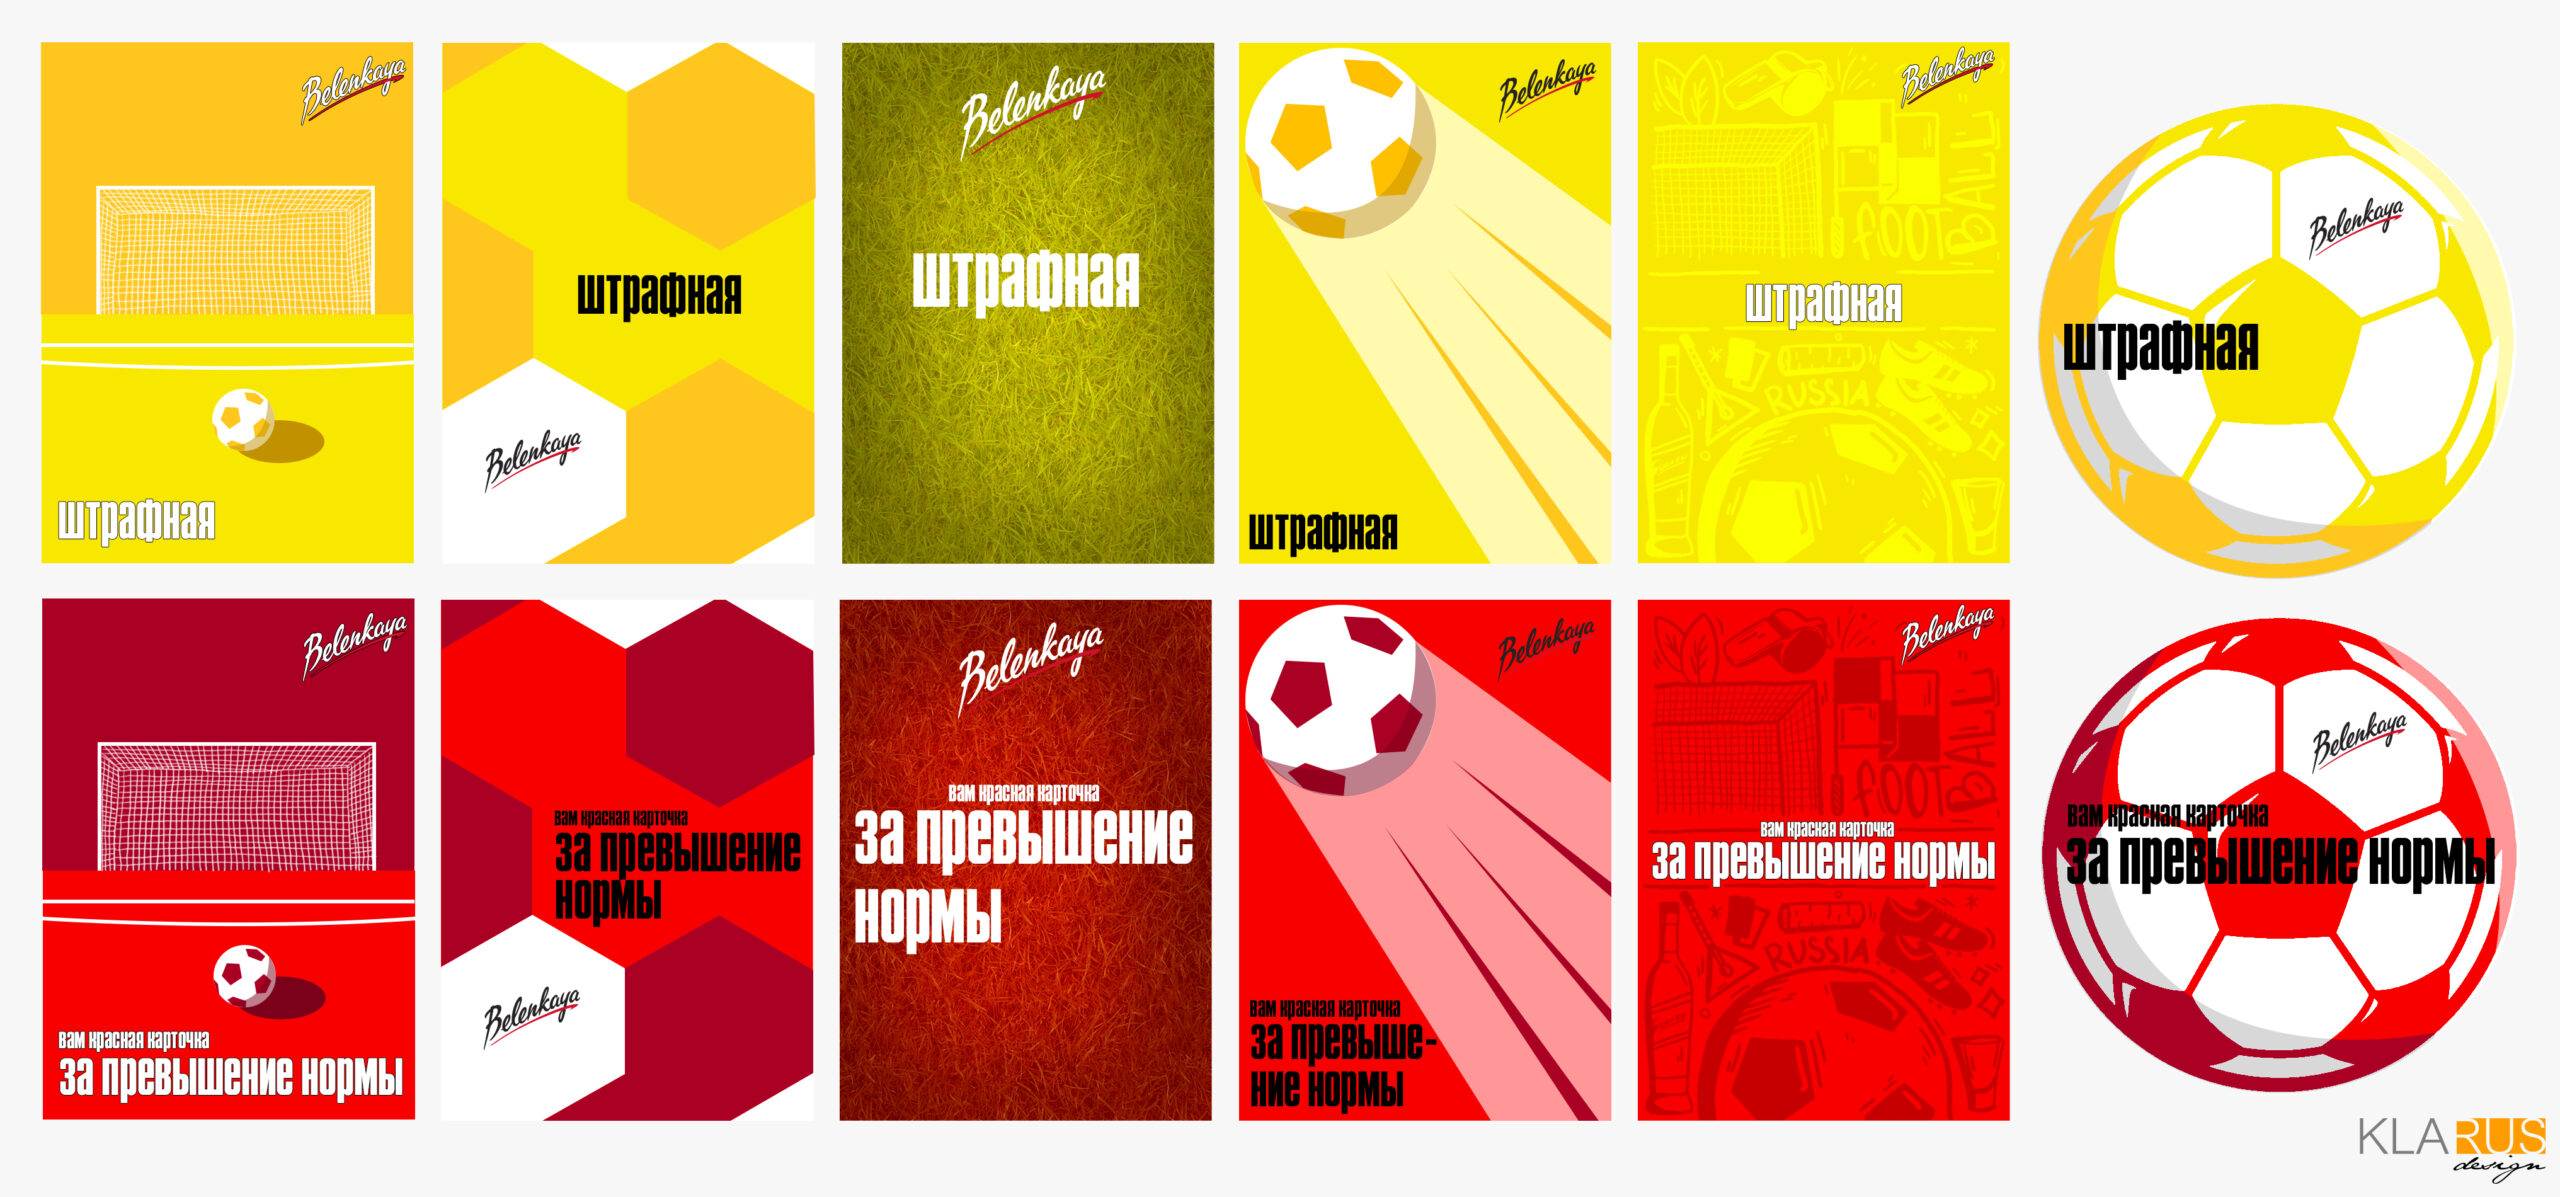 Стикеры бренда Беленькая, посвящённые проведению Чемпионата Мира по футболу в России в 2018 году